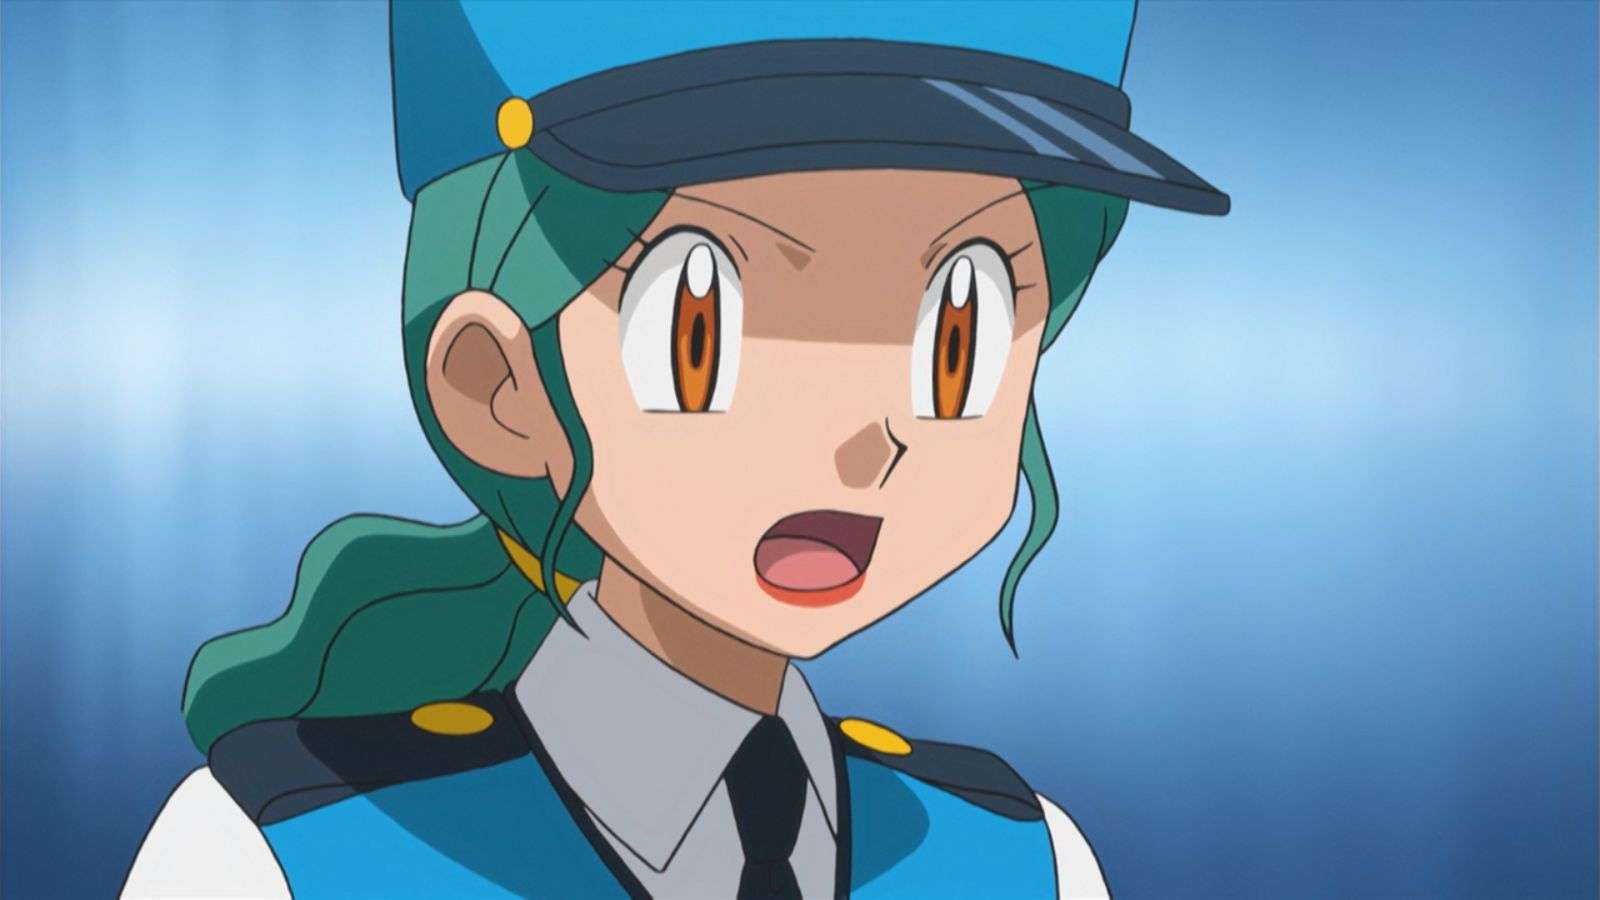 Officer Jenny from Pokemon anime.